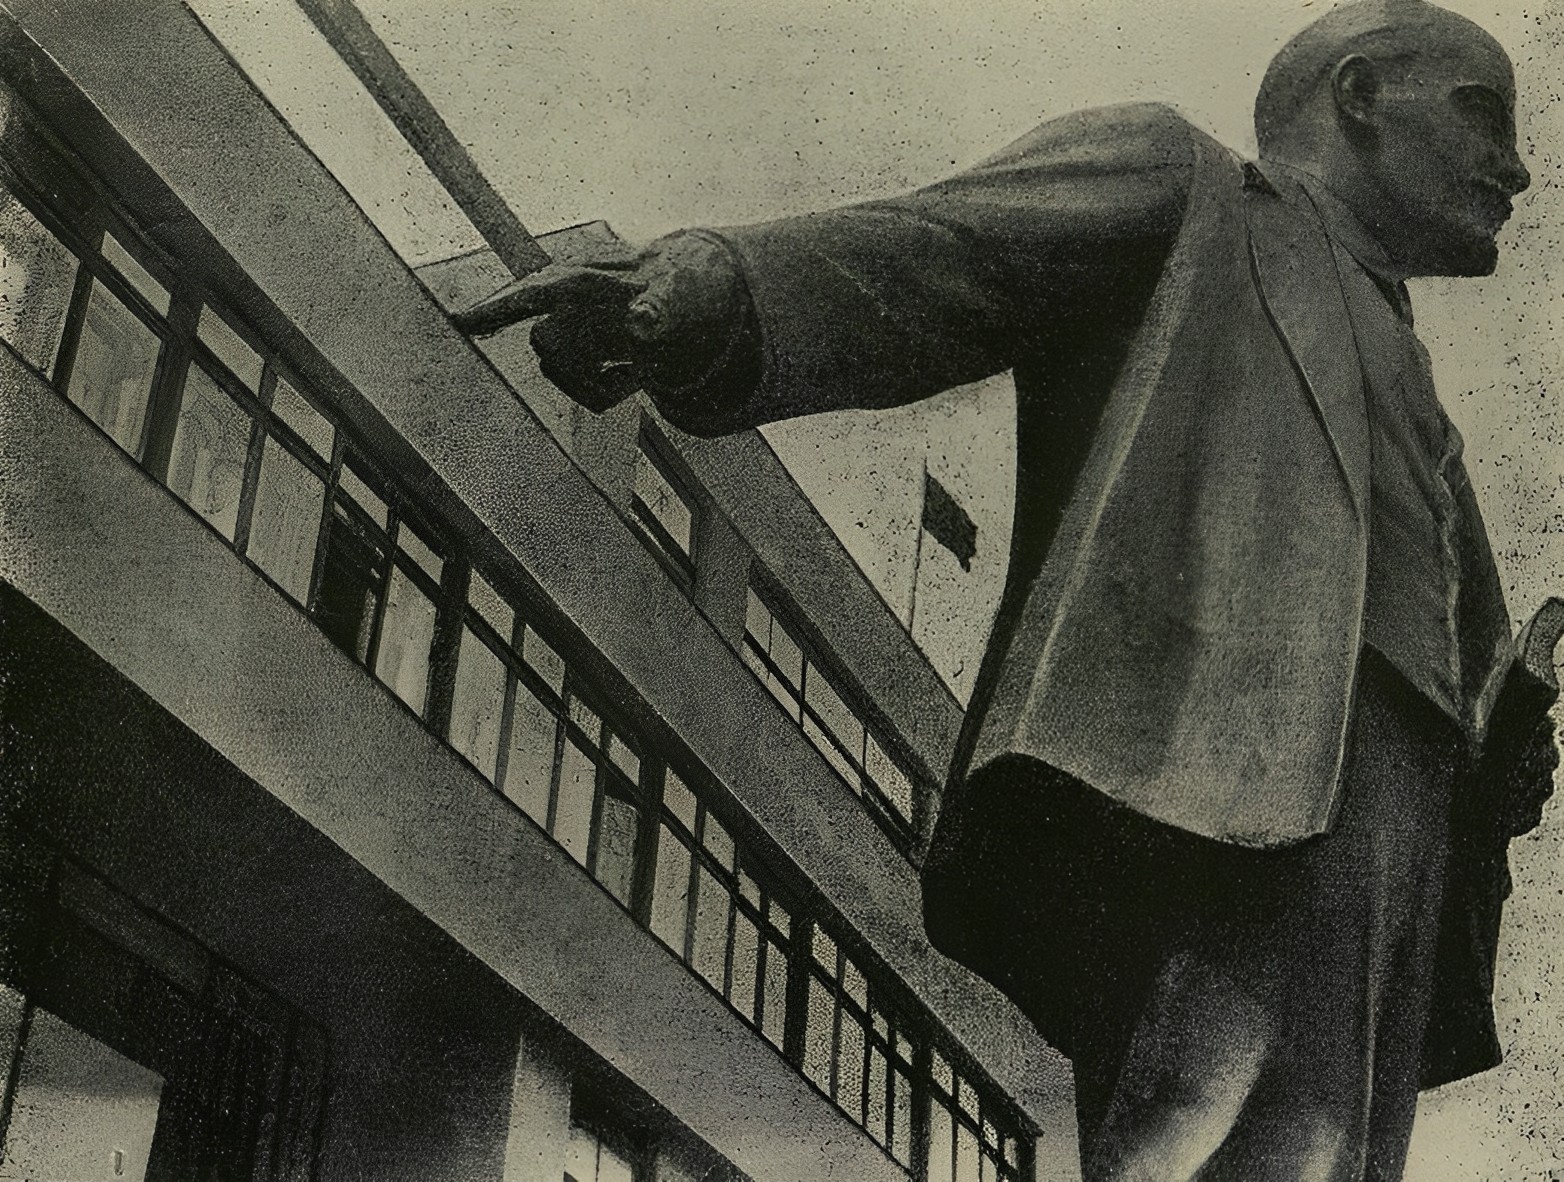 Памятник Ленину перед фабрикой-кухней в Ленинграде. Monument de Lénine devant une cuisine-fabrique à Léningrad.